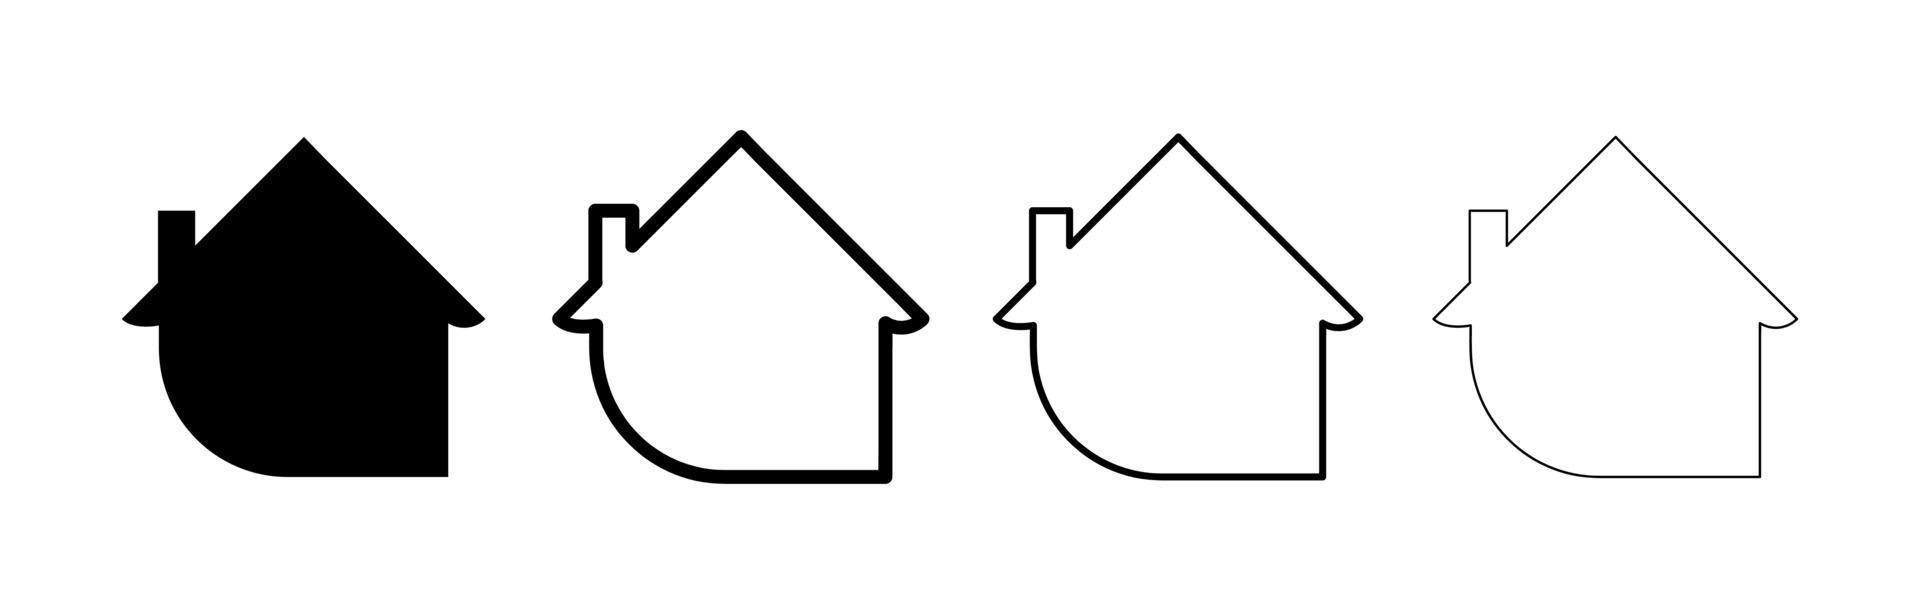 étiquette d'emplacement du domicile. icône de la maison avec bulle de dialogue. diverses maisons. dessin modifiable. jeu d'icônes de différentes épaisseurs. vecteur sur fond blanc.